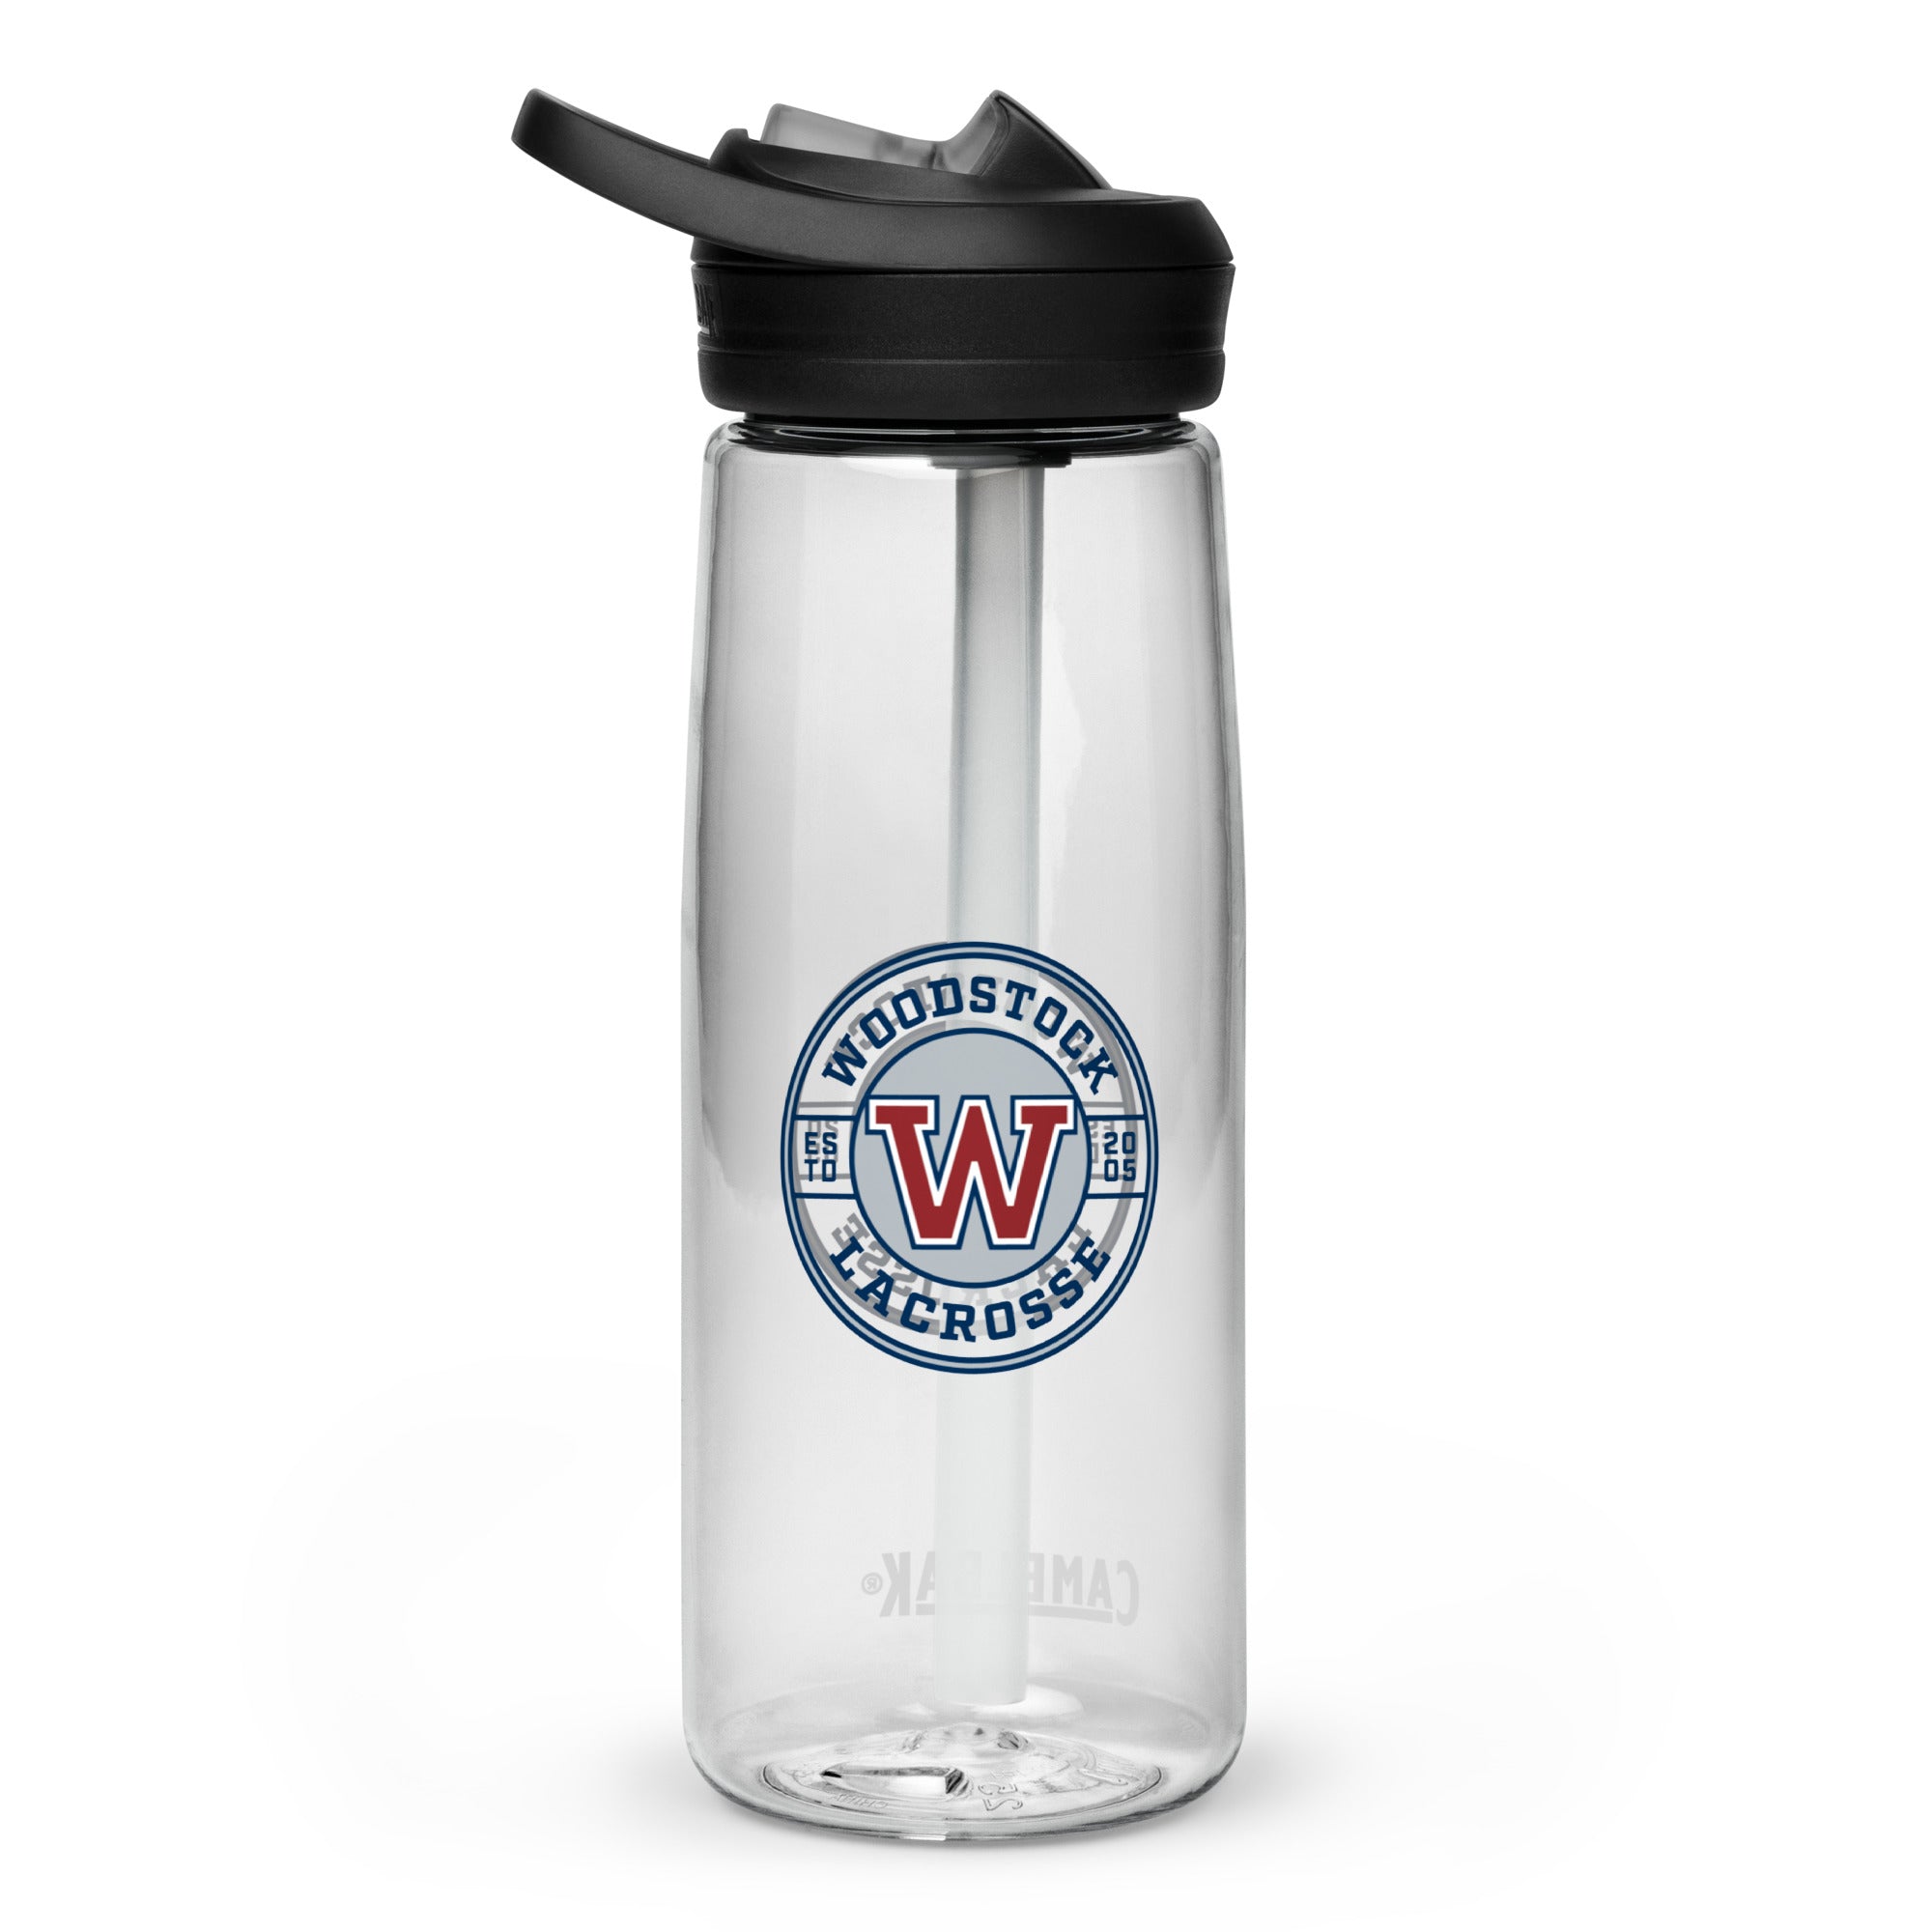 Woodstock Sports water bottle